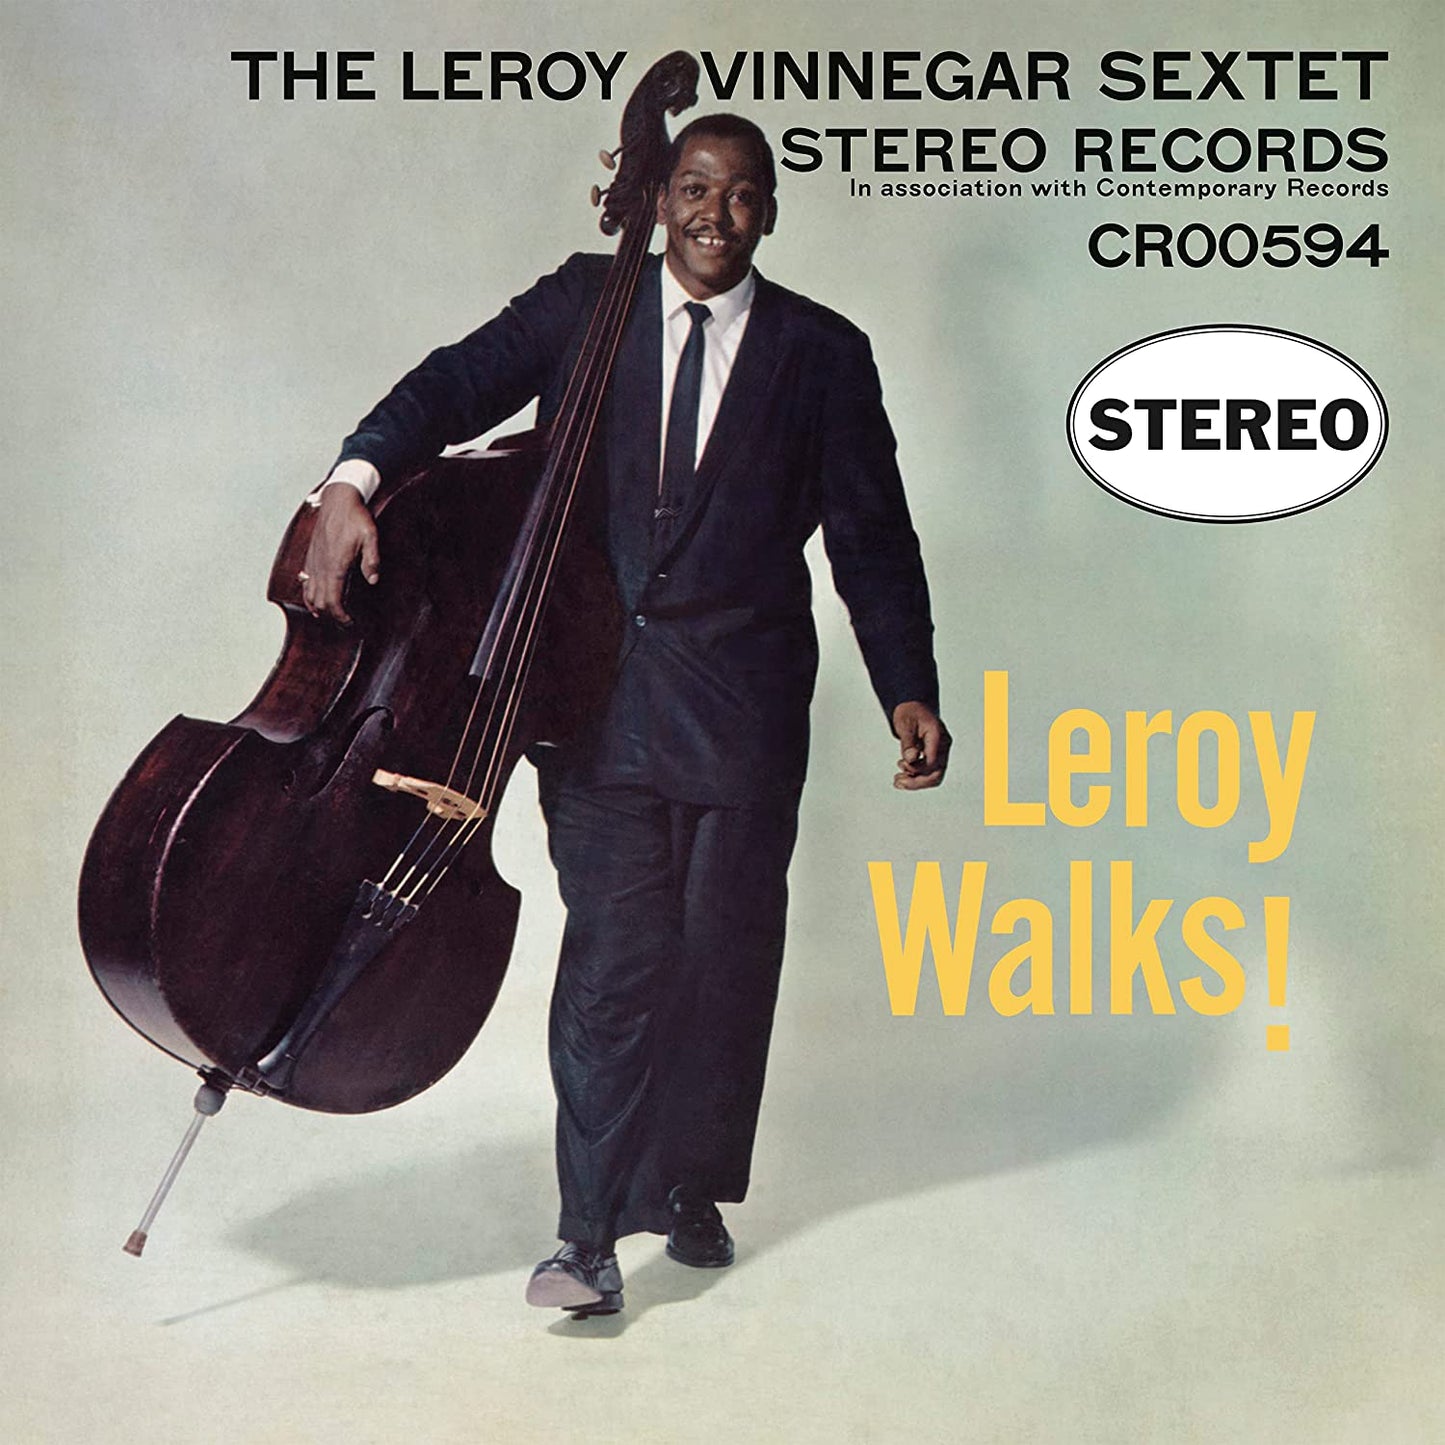 Leroy Vinnegar Sextet - Leroy Walks! (Contemporary Records Acoustic Sounds Series) - LP